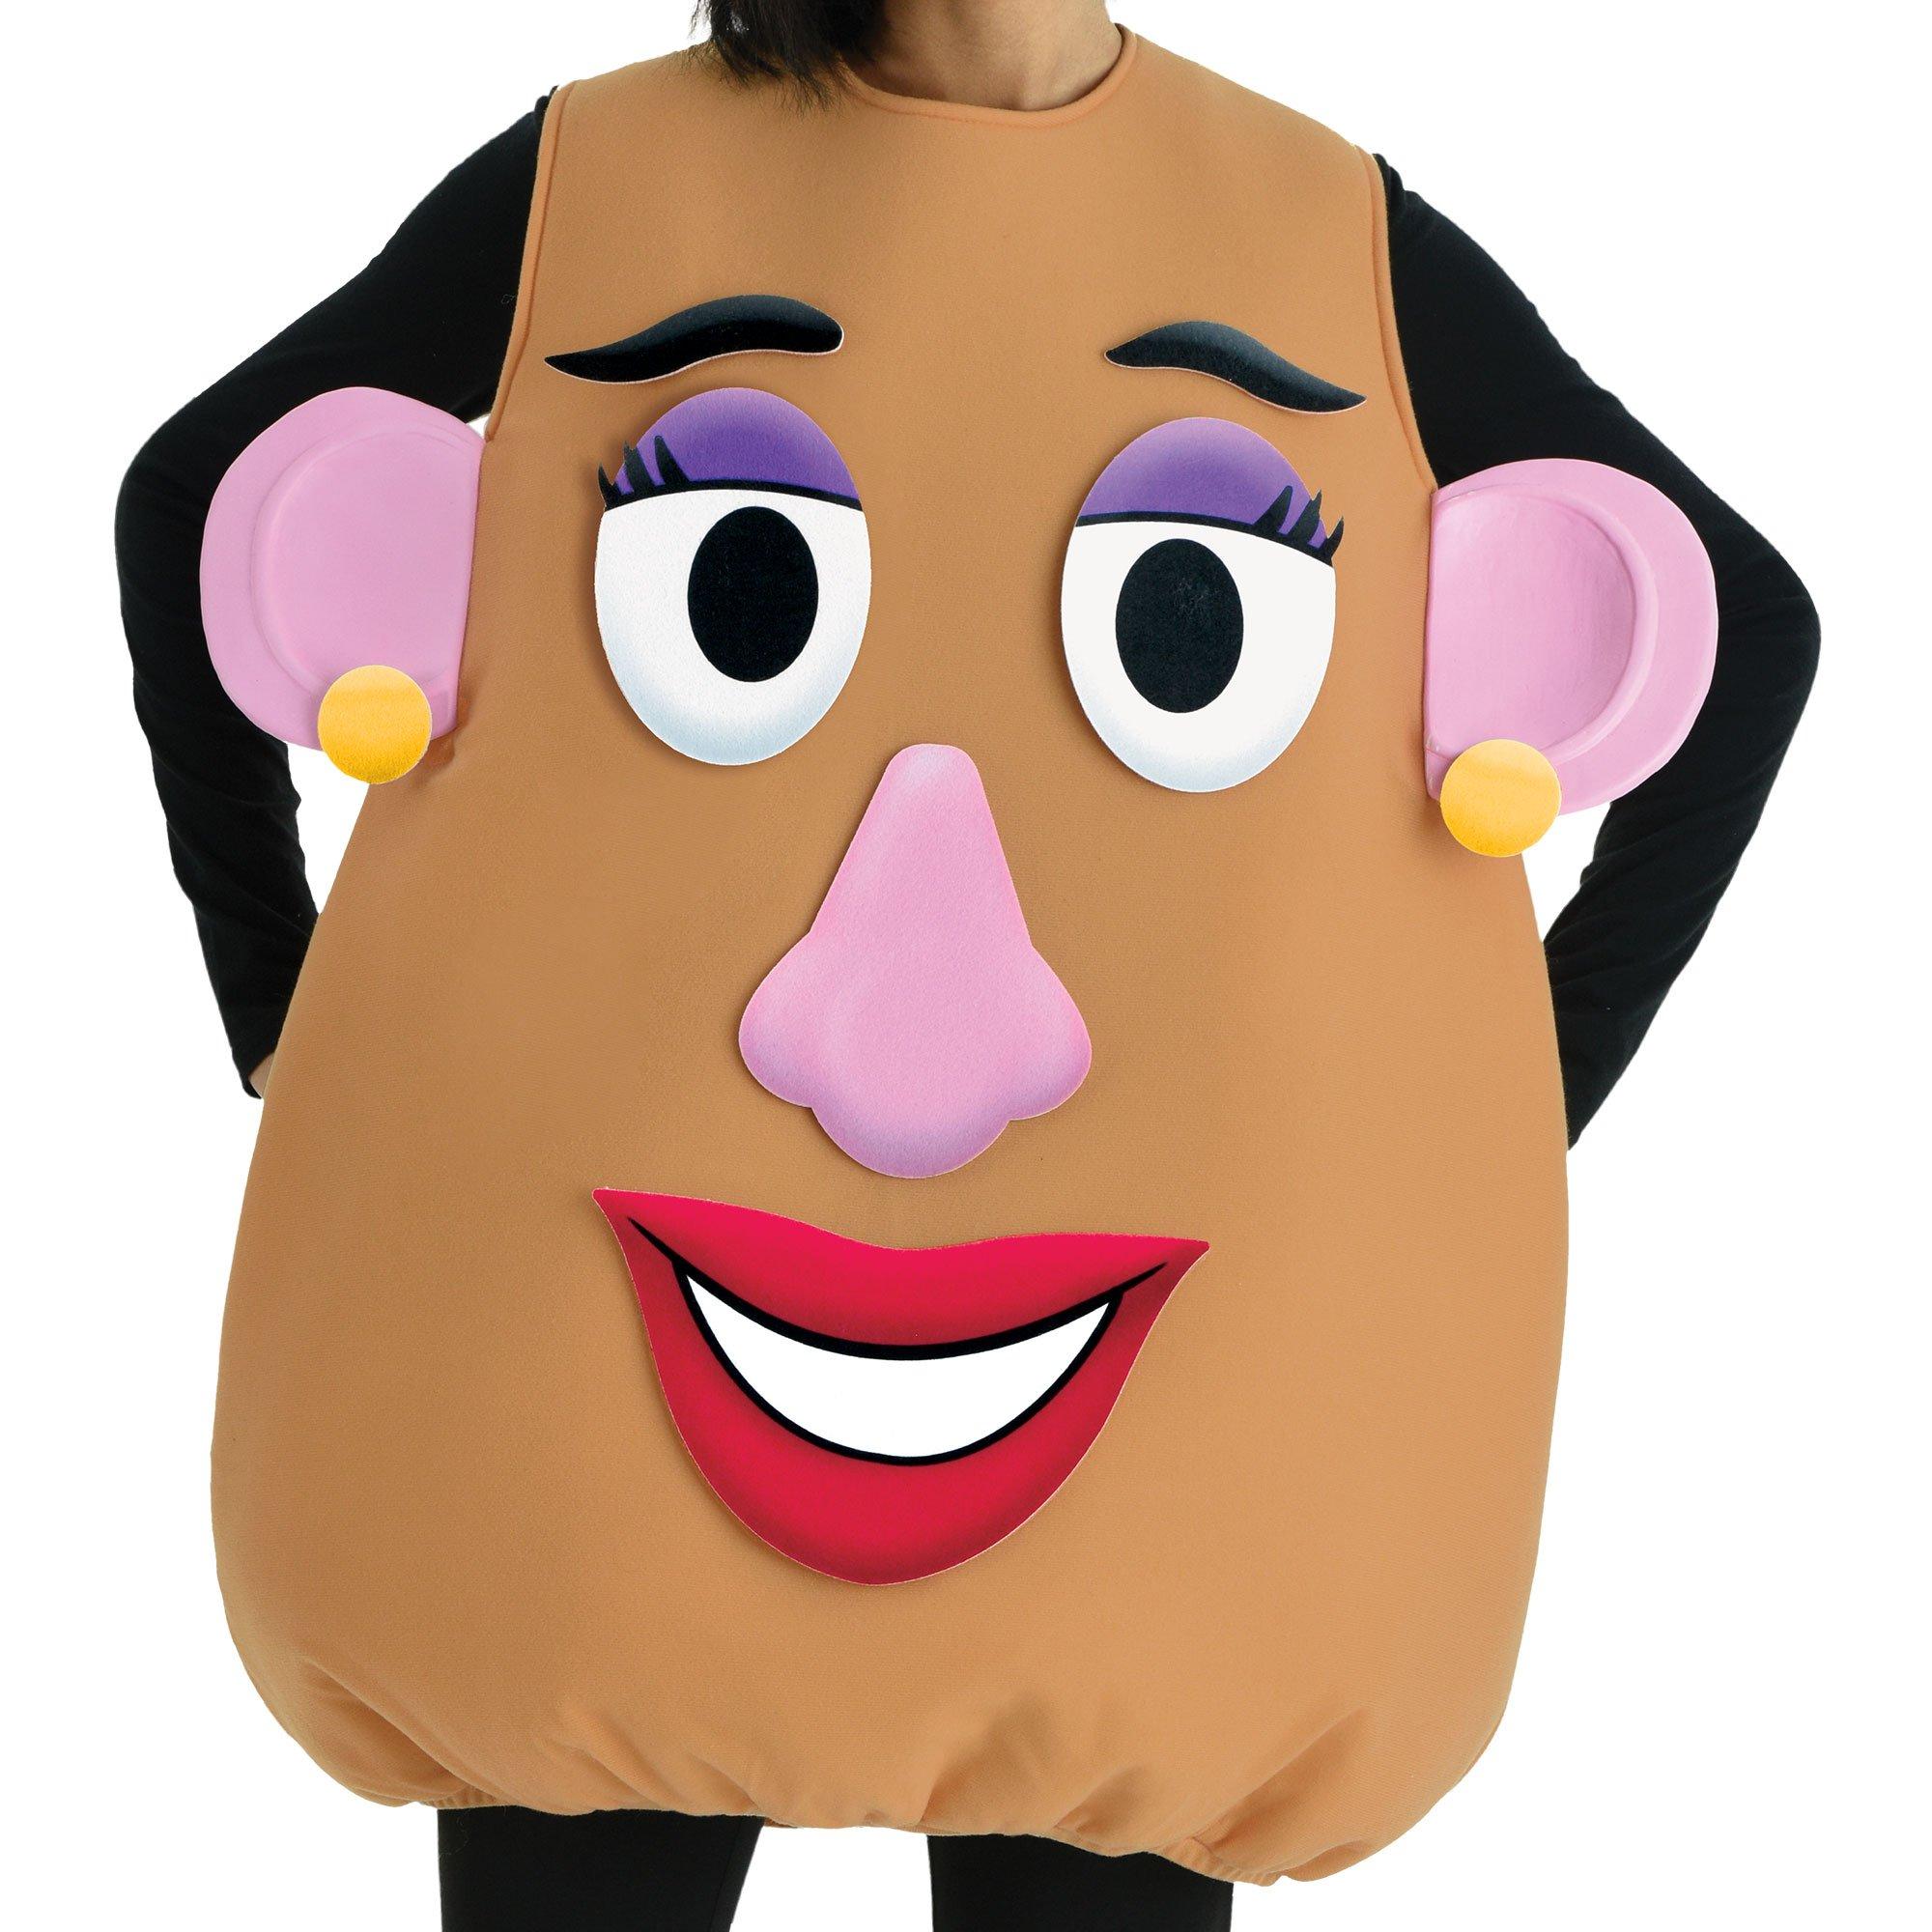 MR Potato Head, Pixar